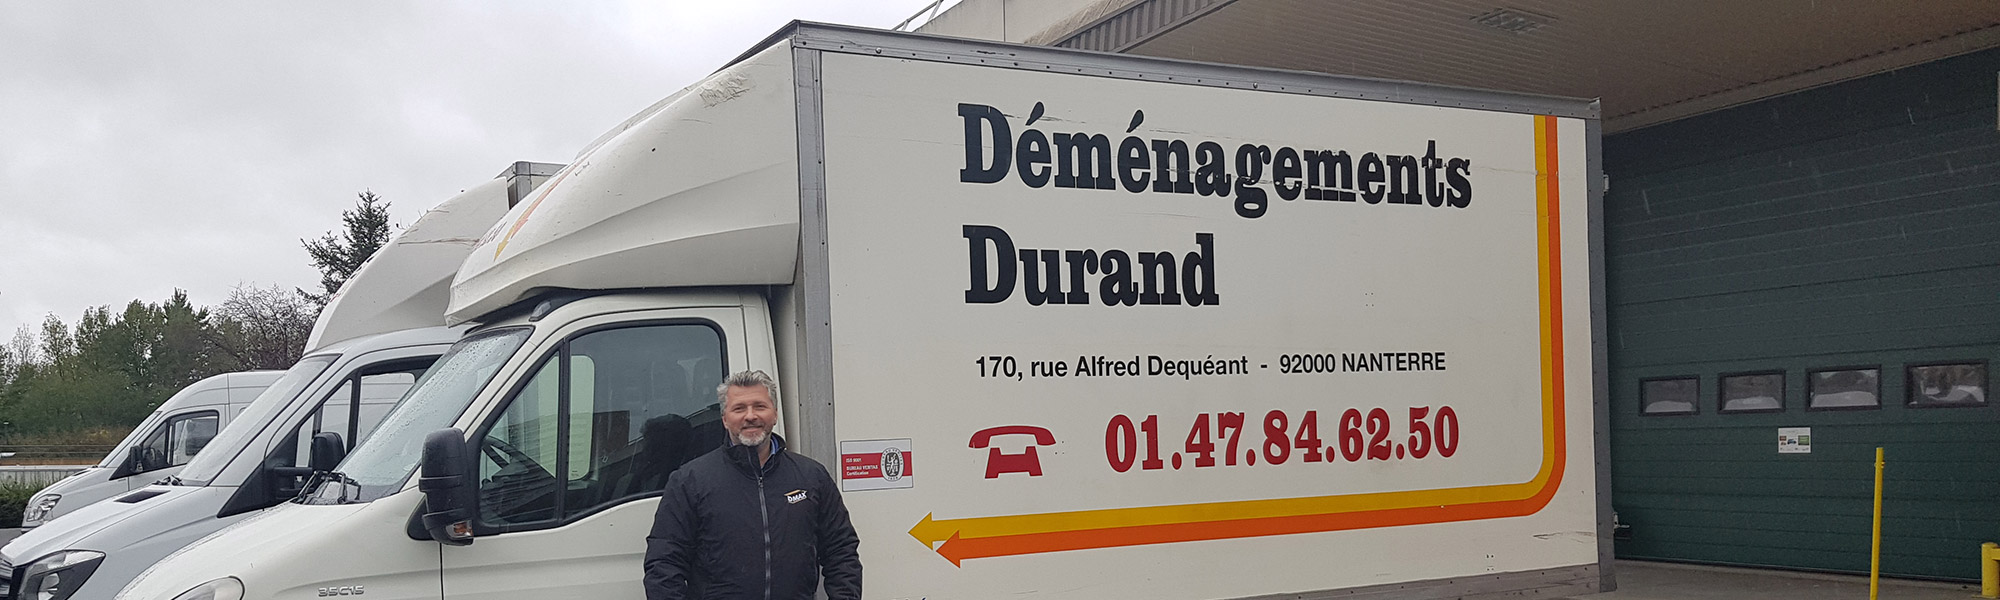 LP - Déménagements Durand Dmax, entreprise de déménagement d'entreprise et particulier